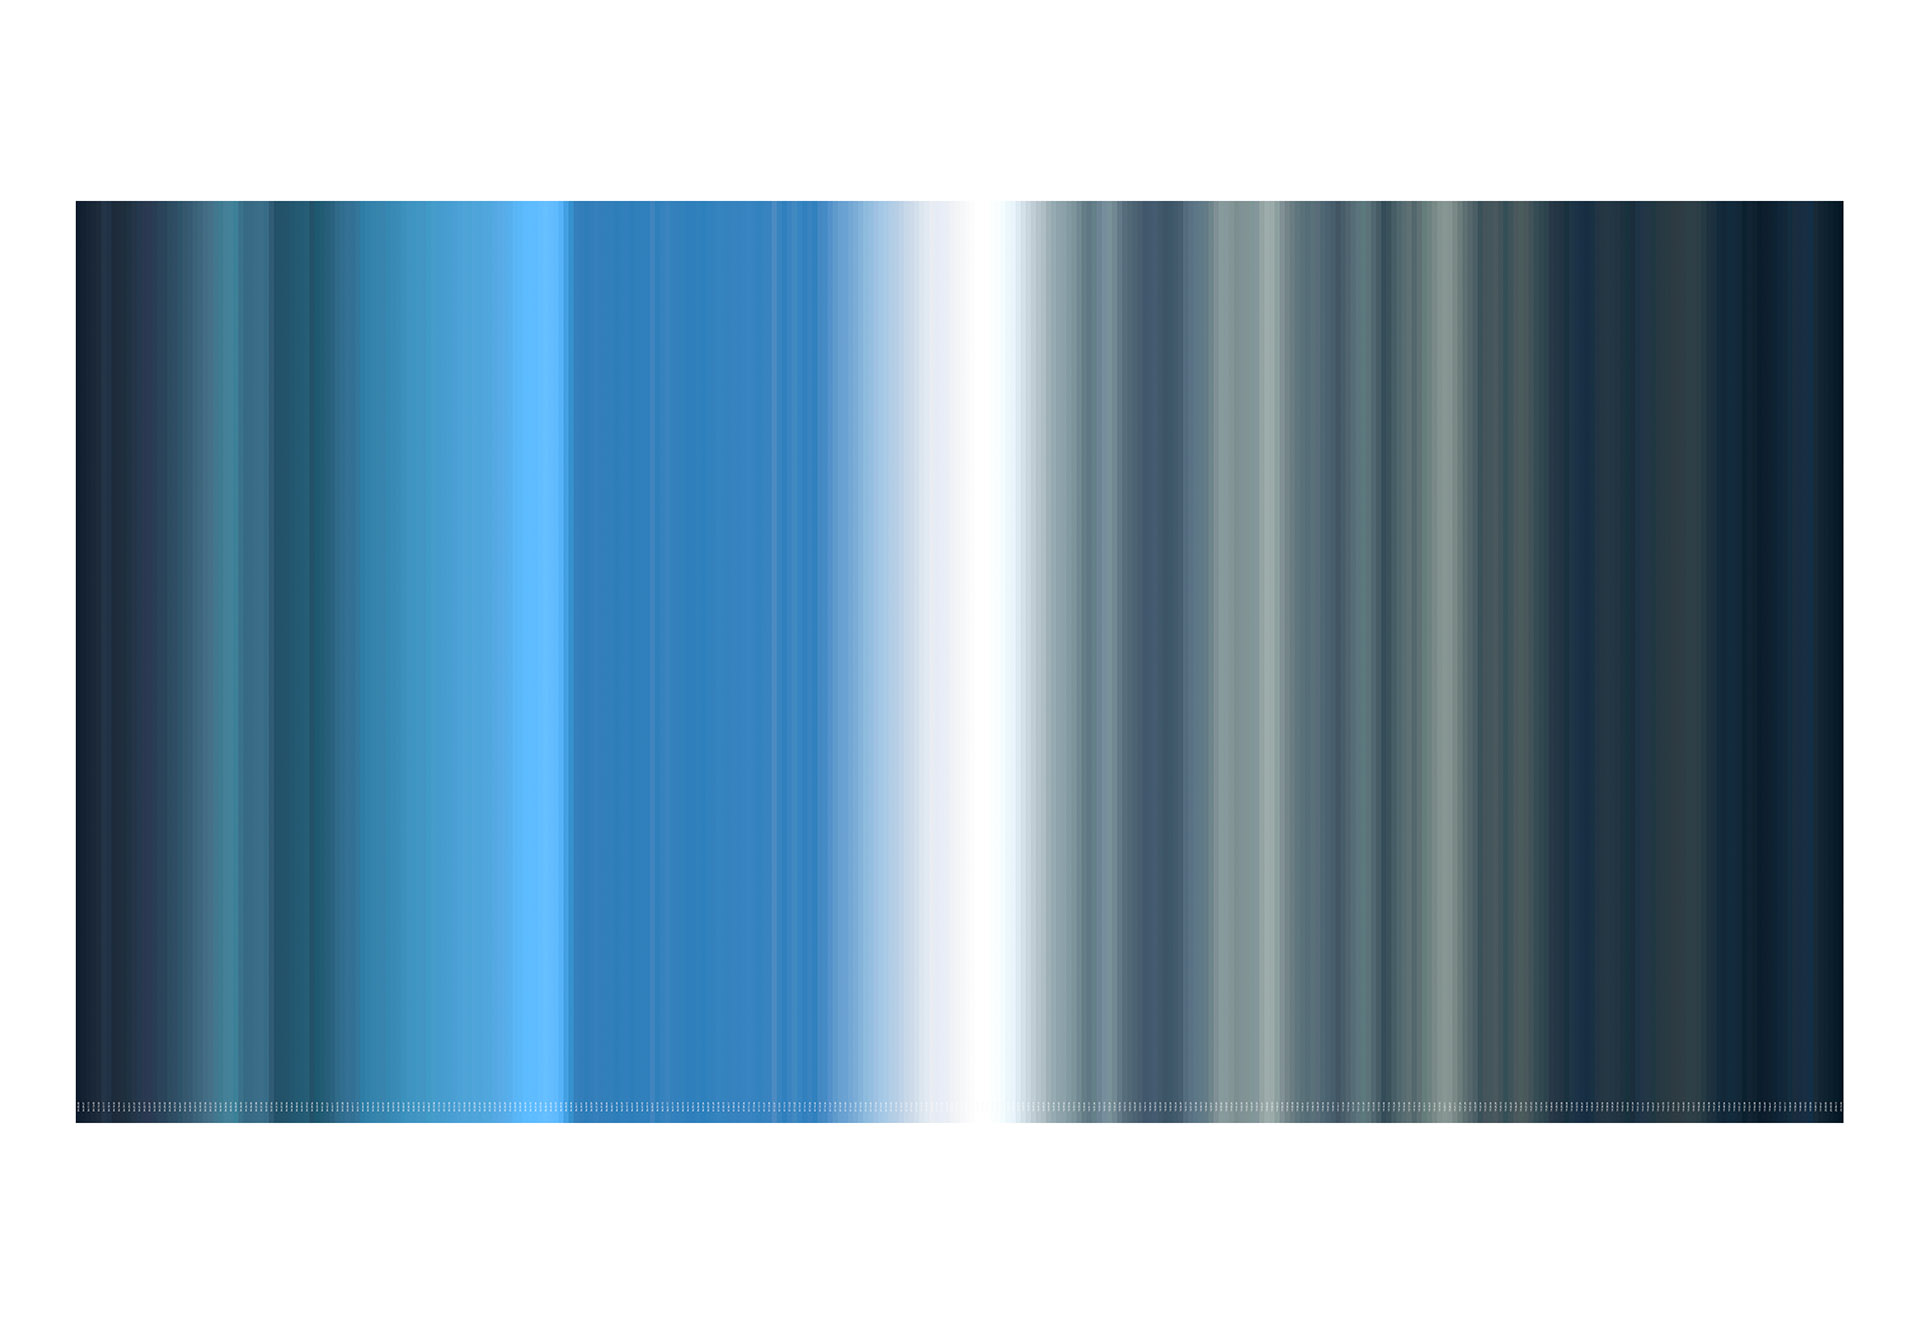 blau, unendlich 2018/12 - 2018, 28.07.2010 - 04:05:00 - 20:15:00, Giclée Druck auf Hahnemühle Photo Gloss 260g, auf Aluminium, Acrylglas, 1/3, 120 x 230 cm